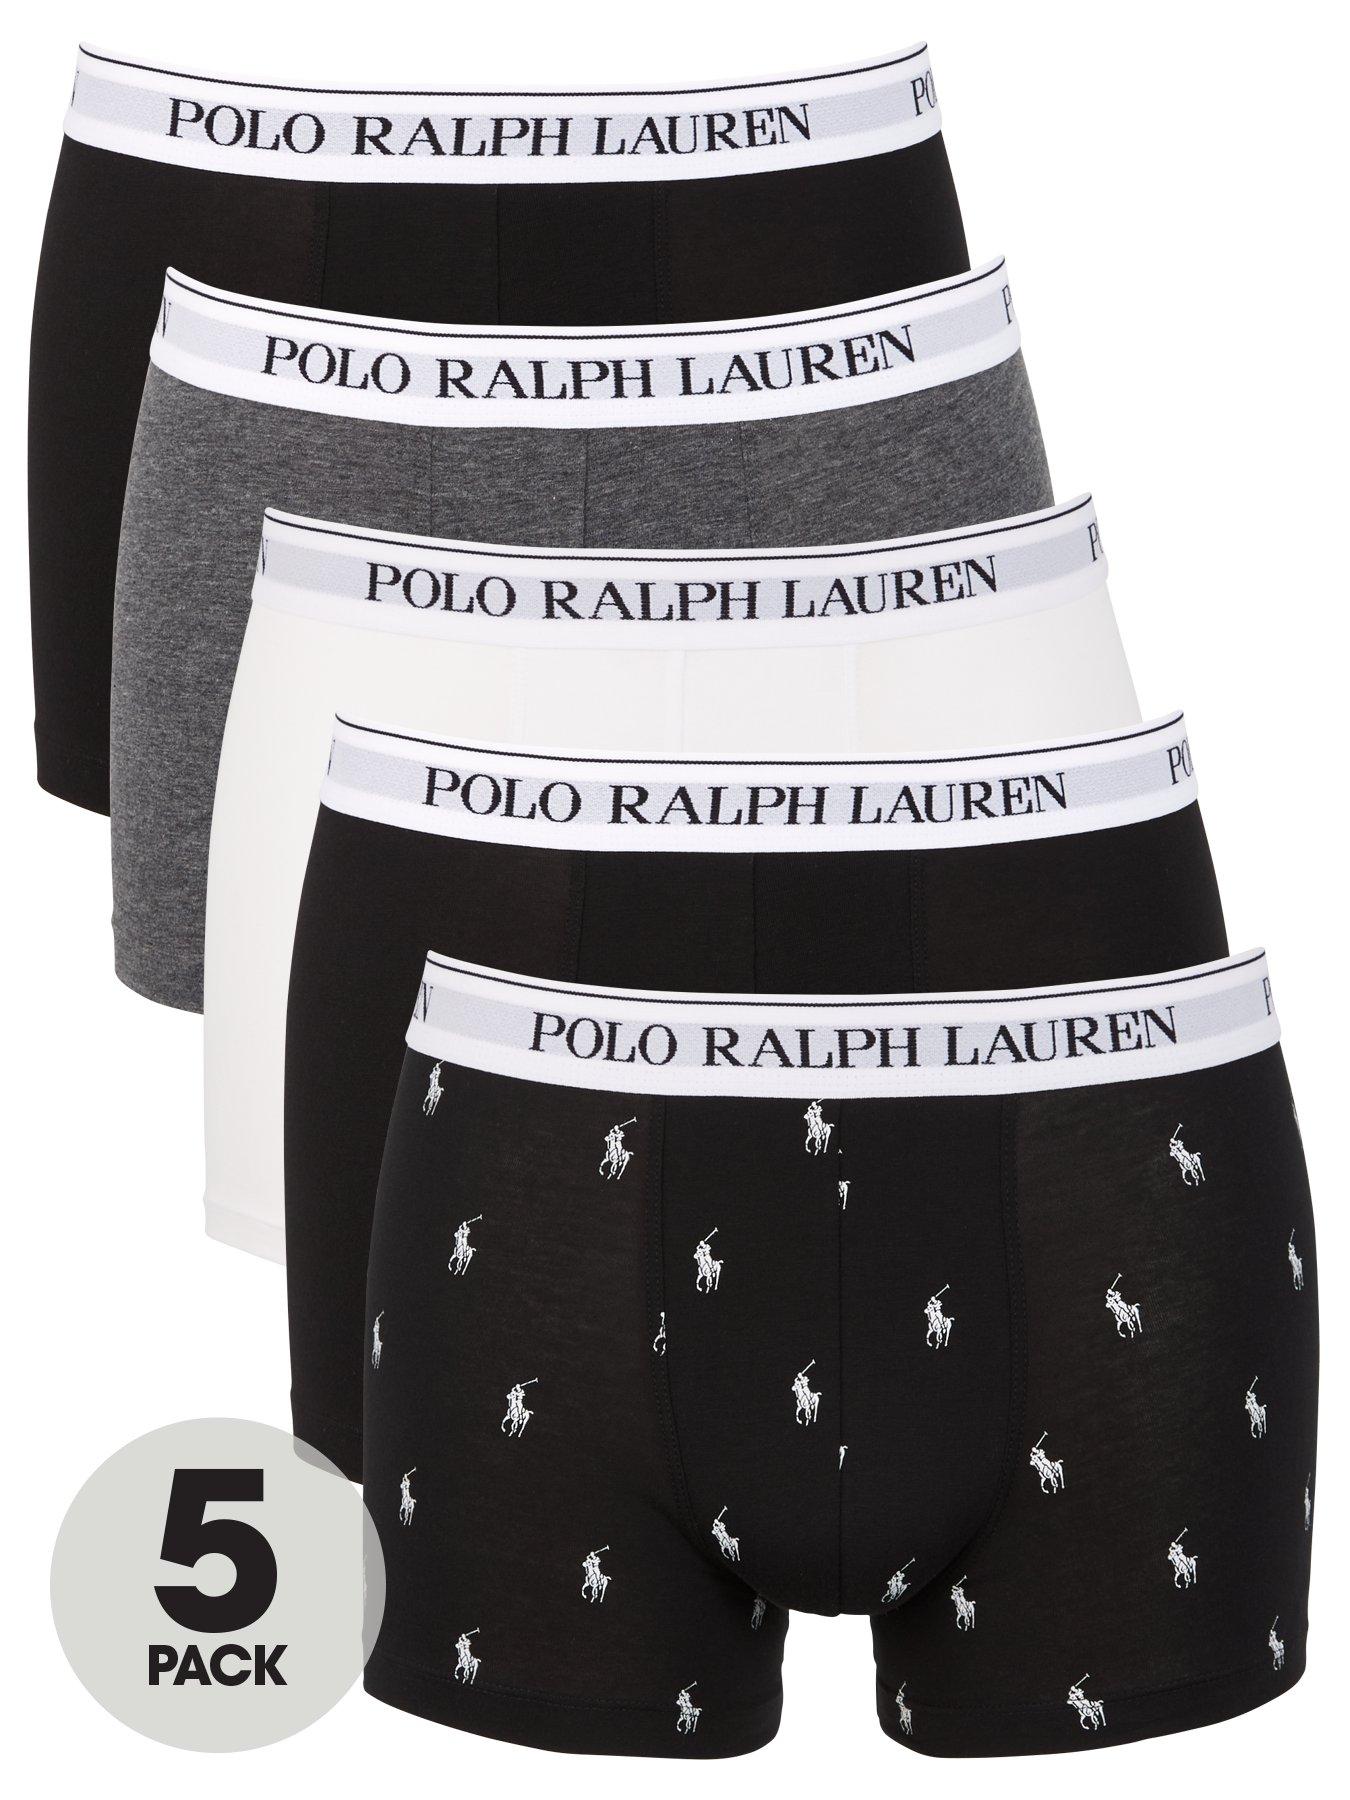 Polo Ralph Lauren Five Pack Trunks - Multi 